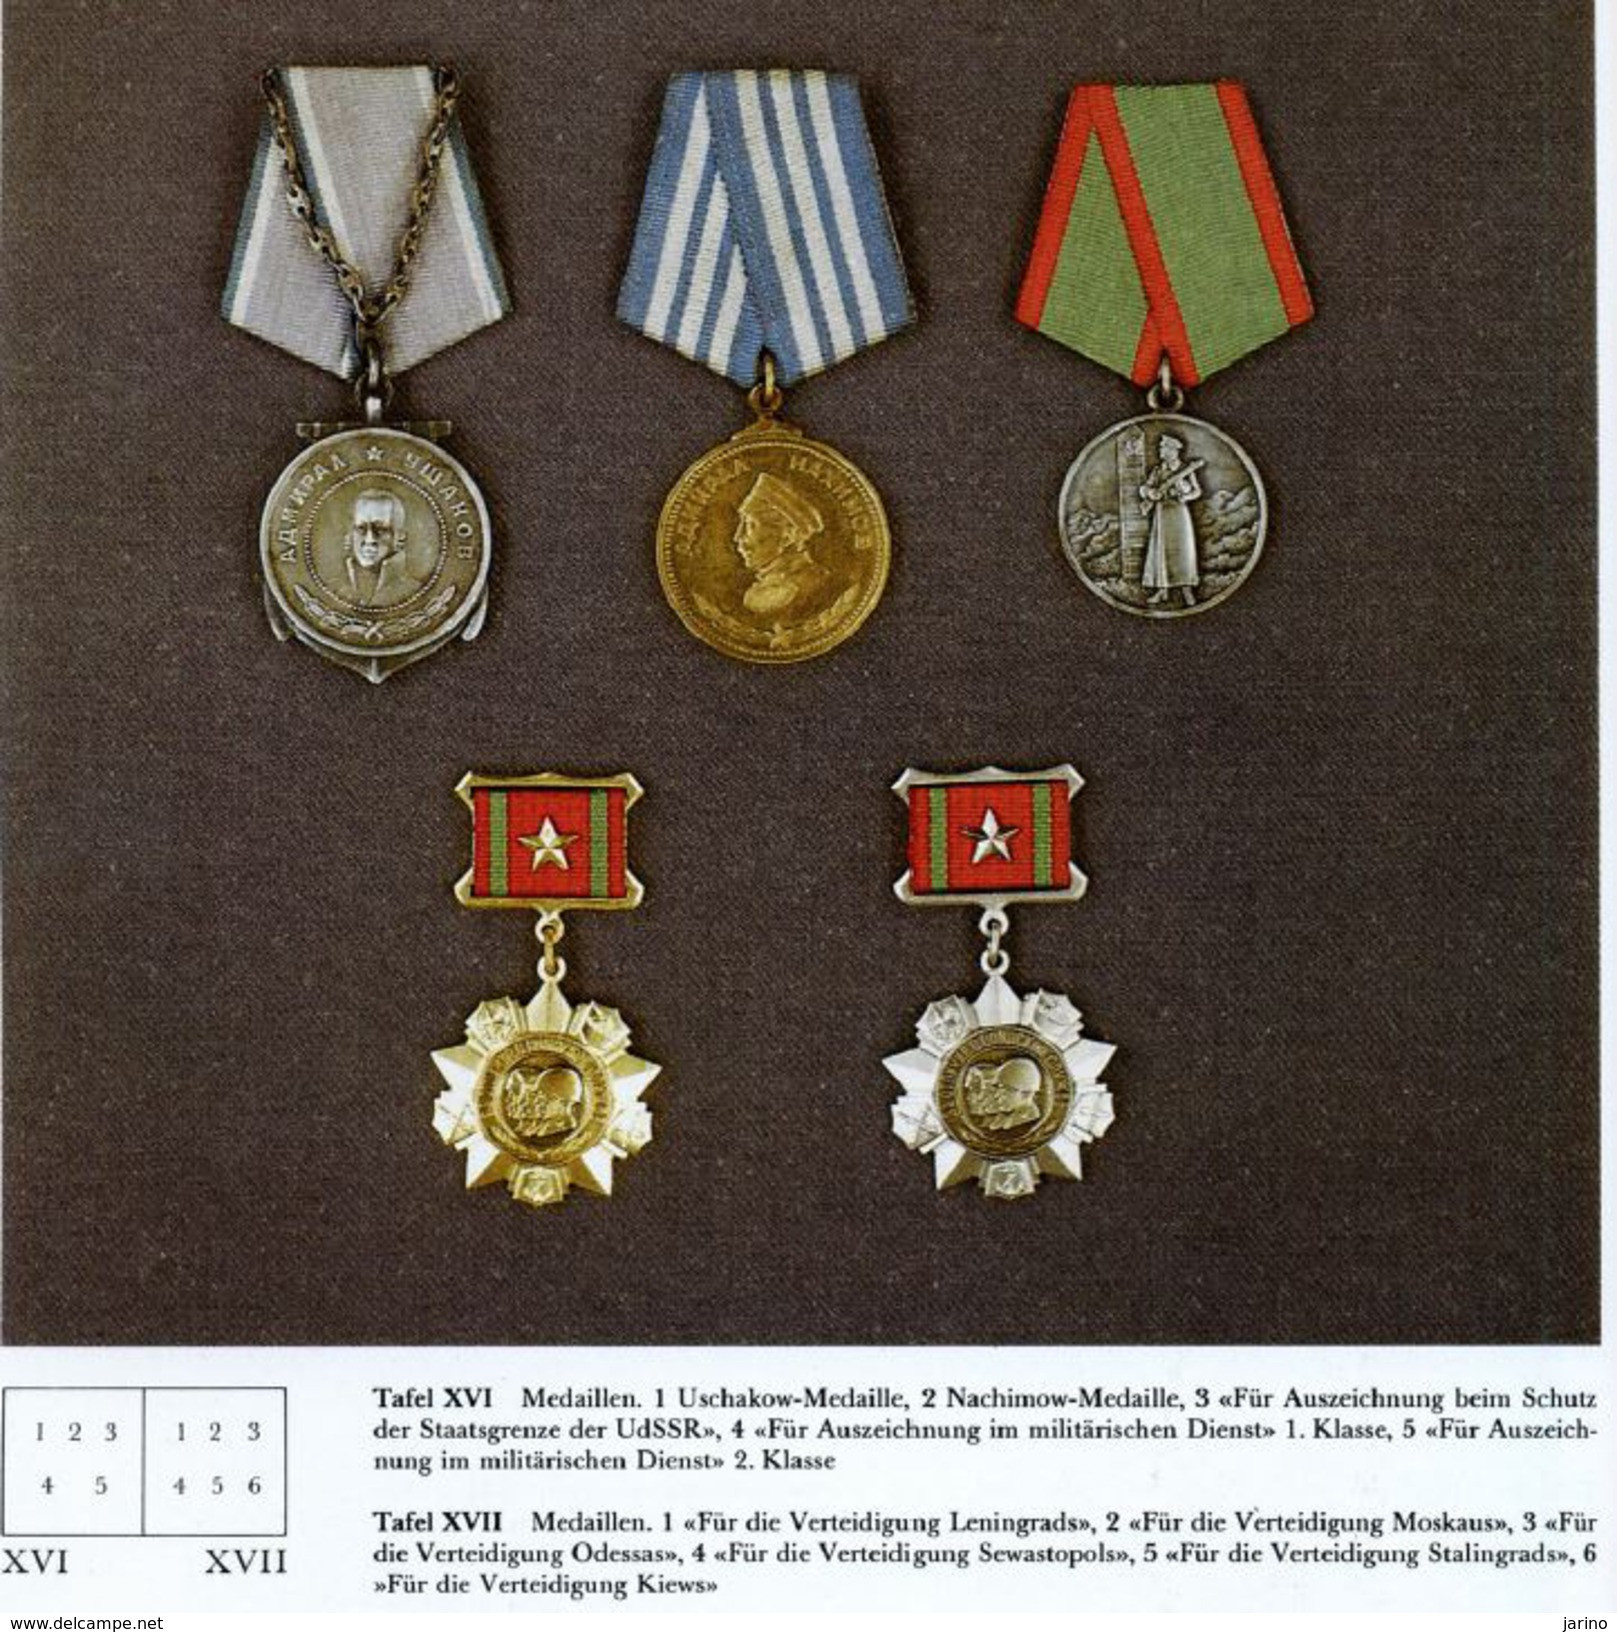 Militärisch Auszeichnungen der UdSSR 1917-1985, 163 Seiten auf DVD